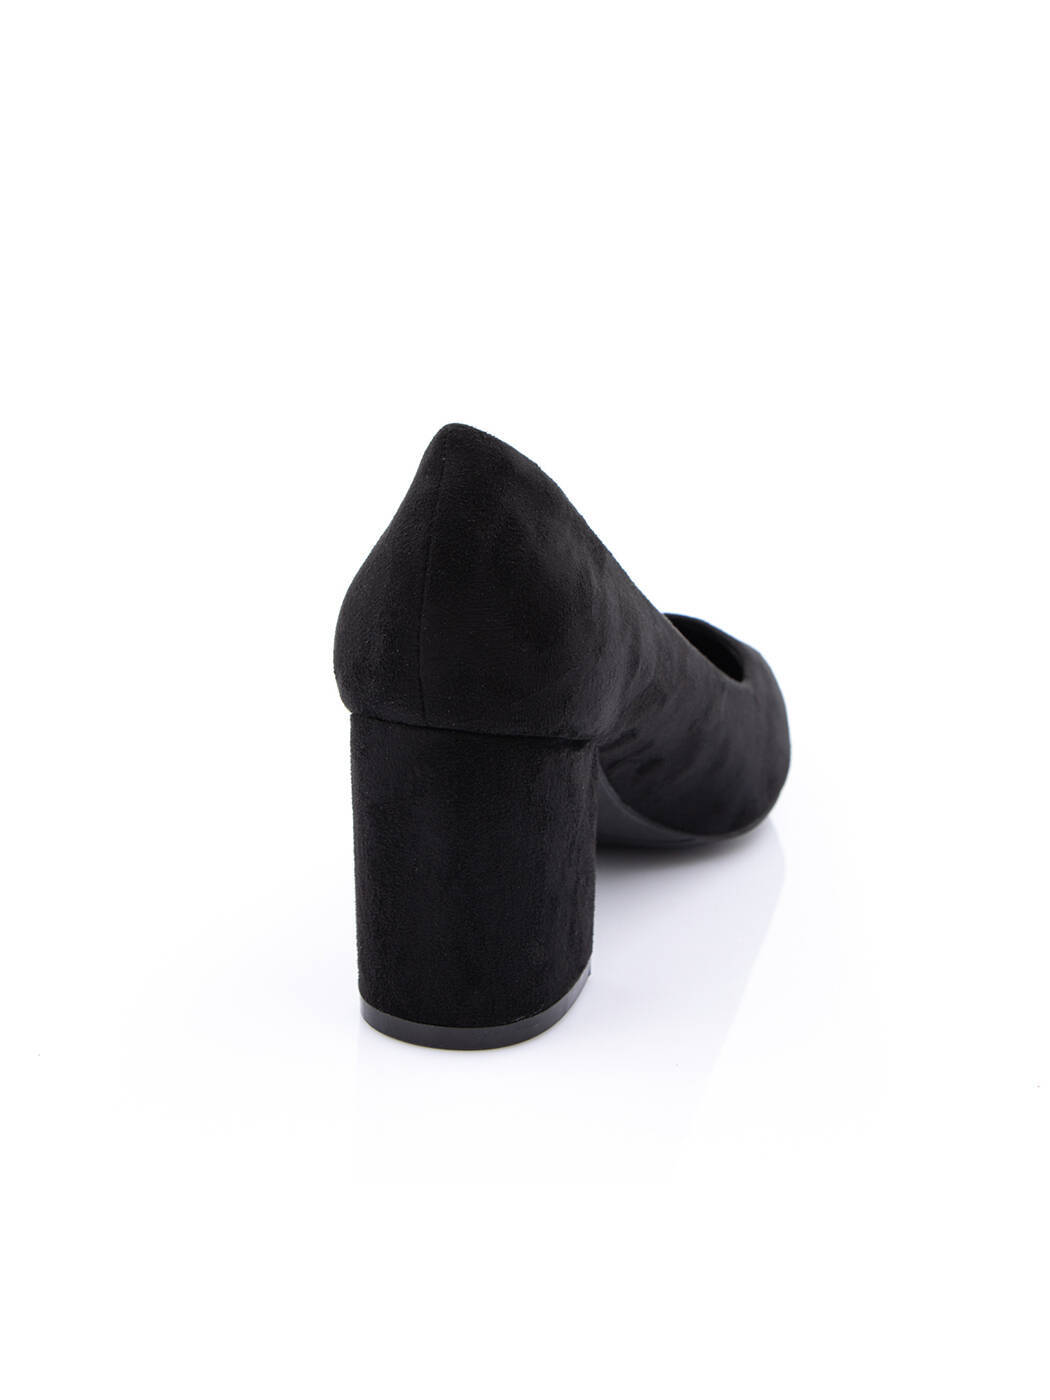 Туфли женские черные экозамша каблук устойчивый демисезон от производителя AM вид 0